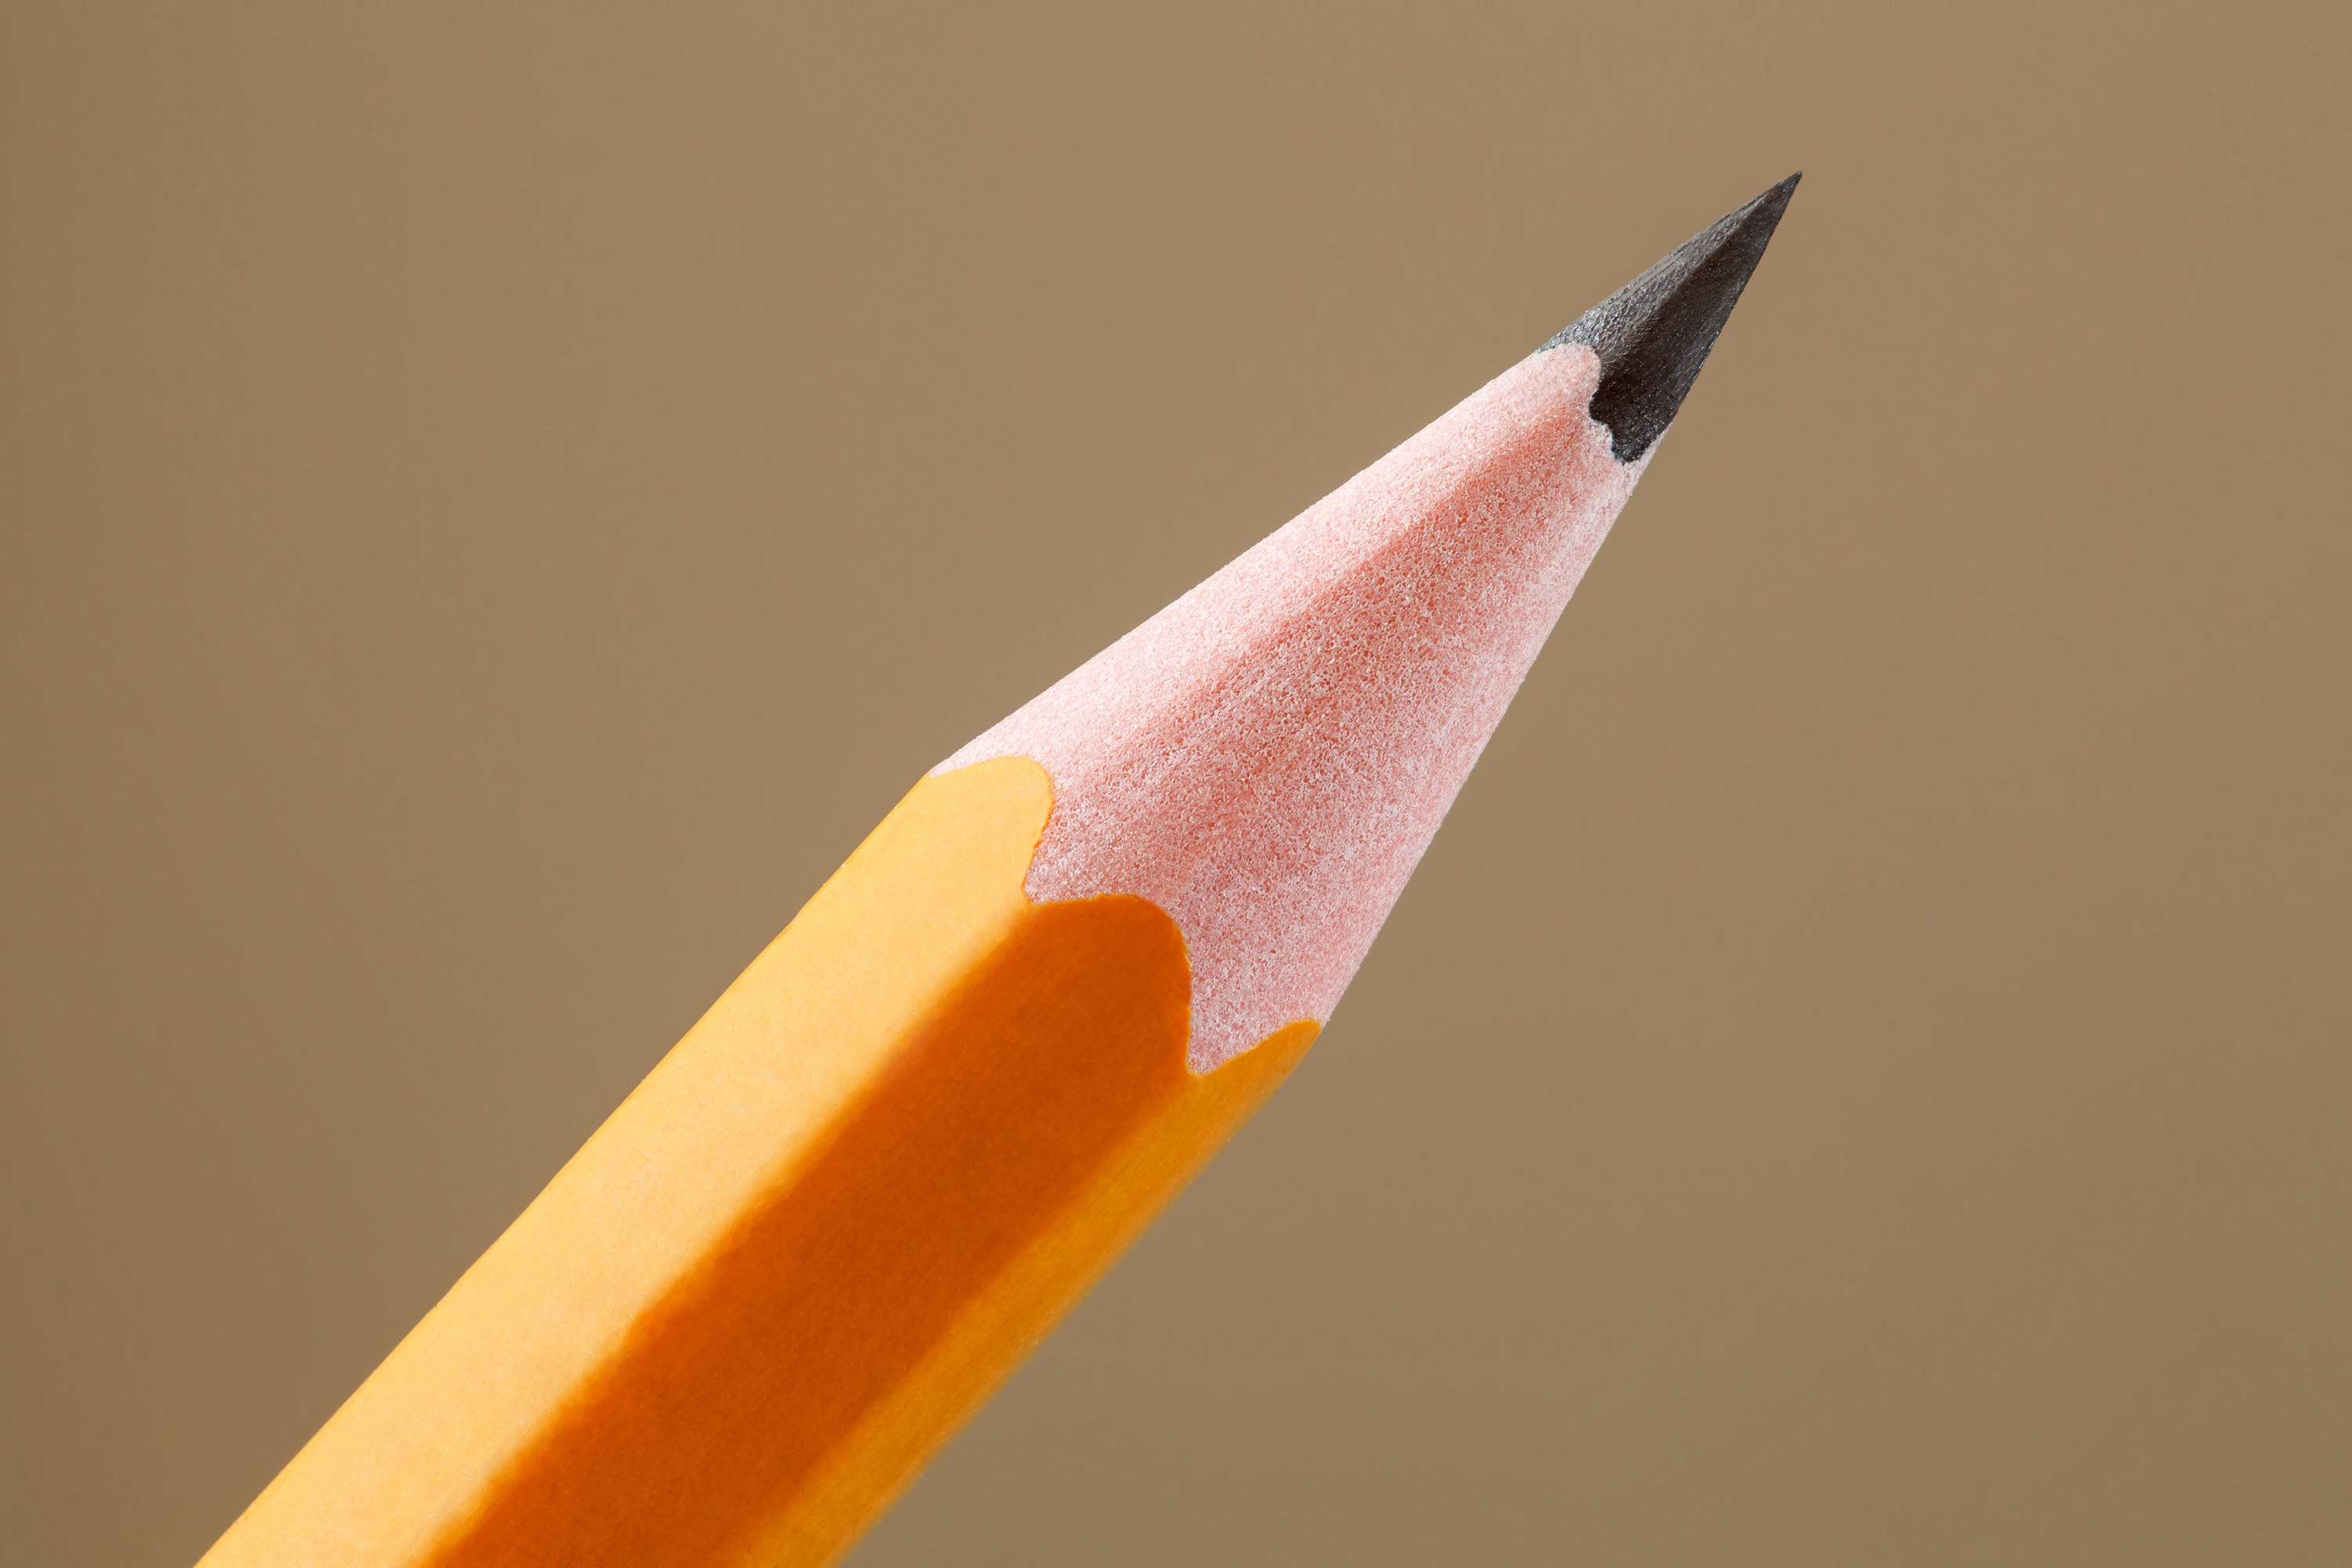 a pencil